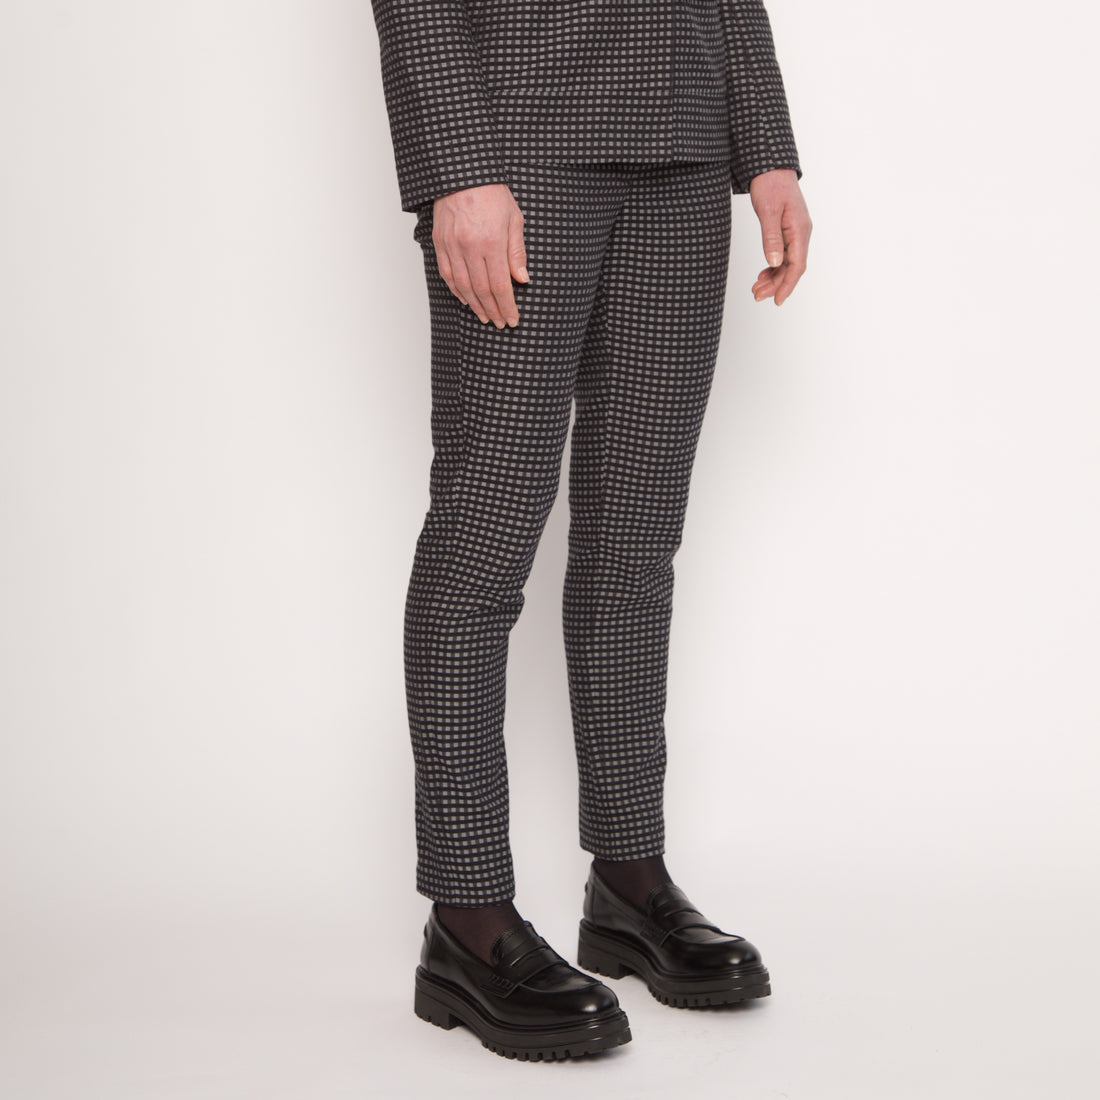 Pantalon tailleur slim - Coton - Vichy gris et noirs - NUYHENN